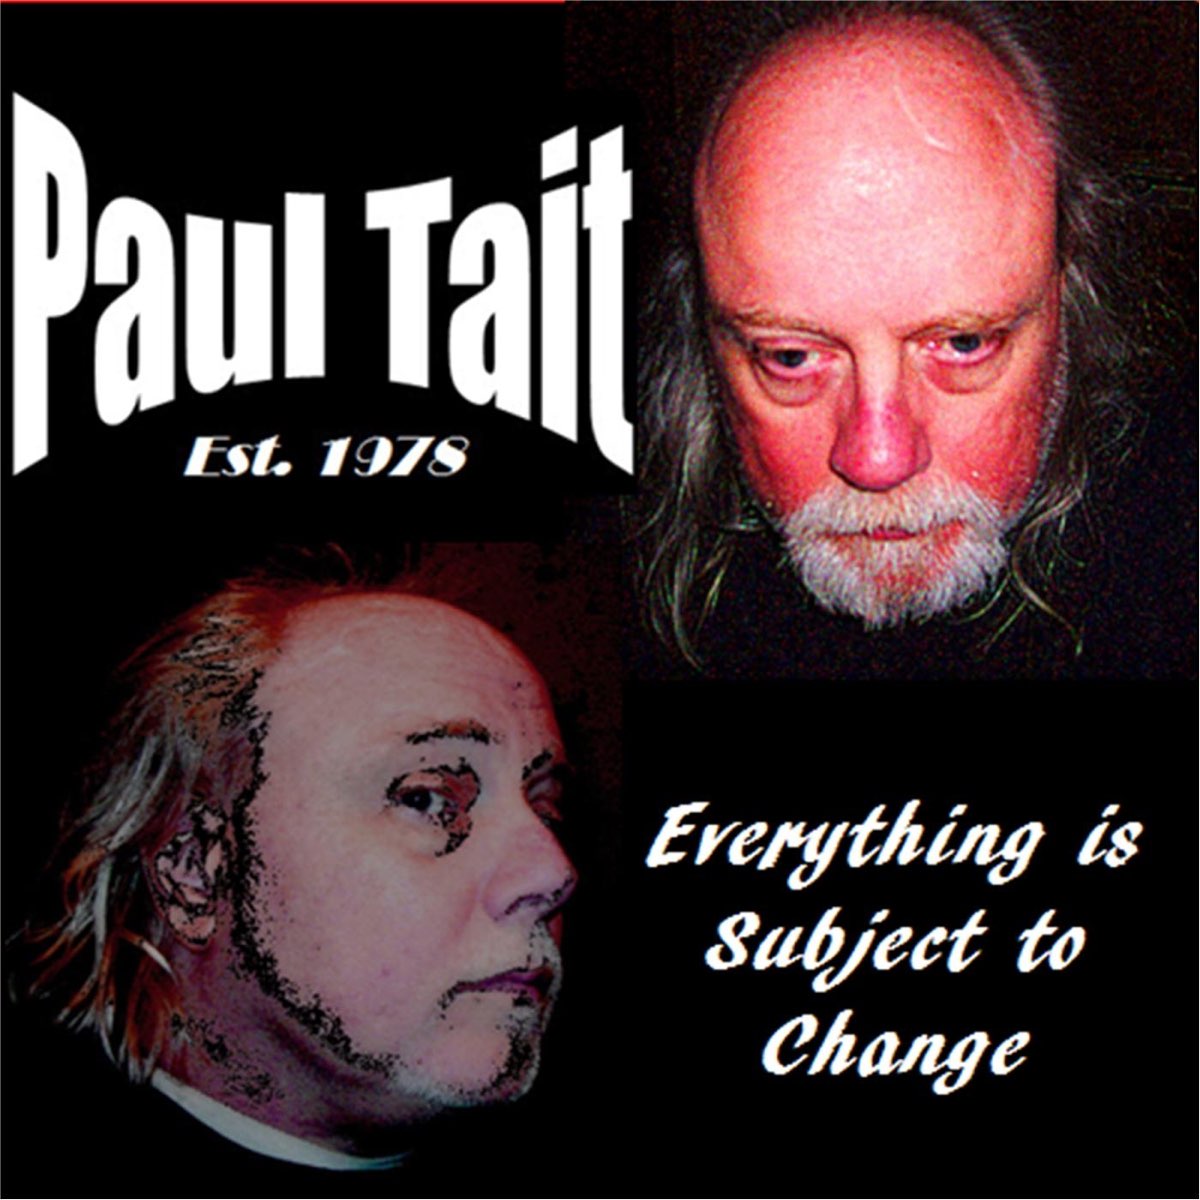 Paul changes